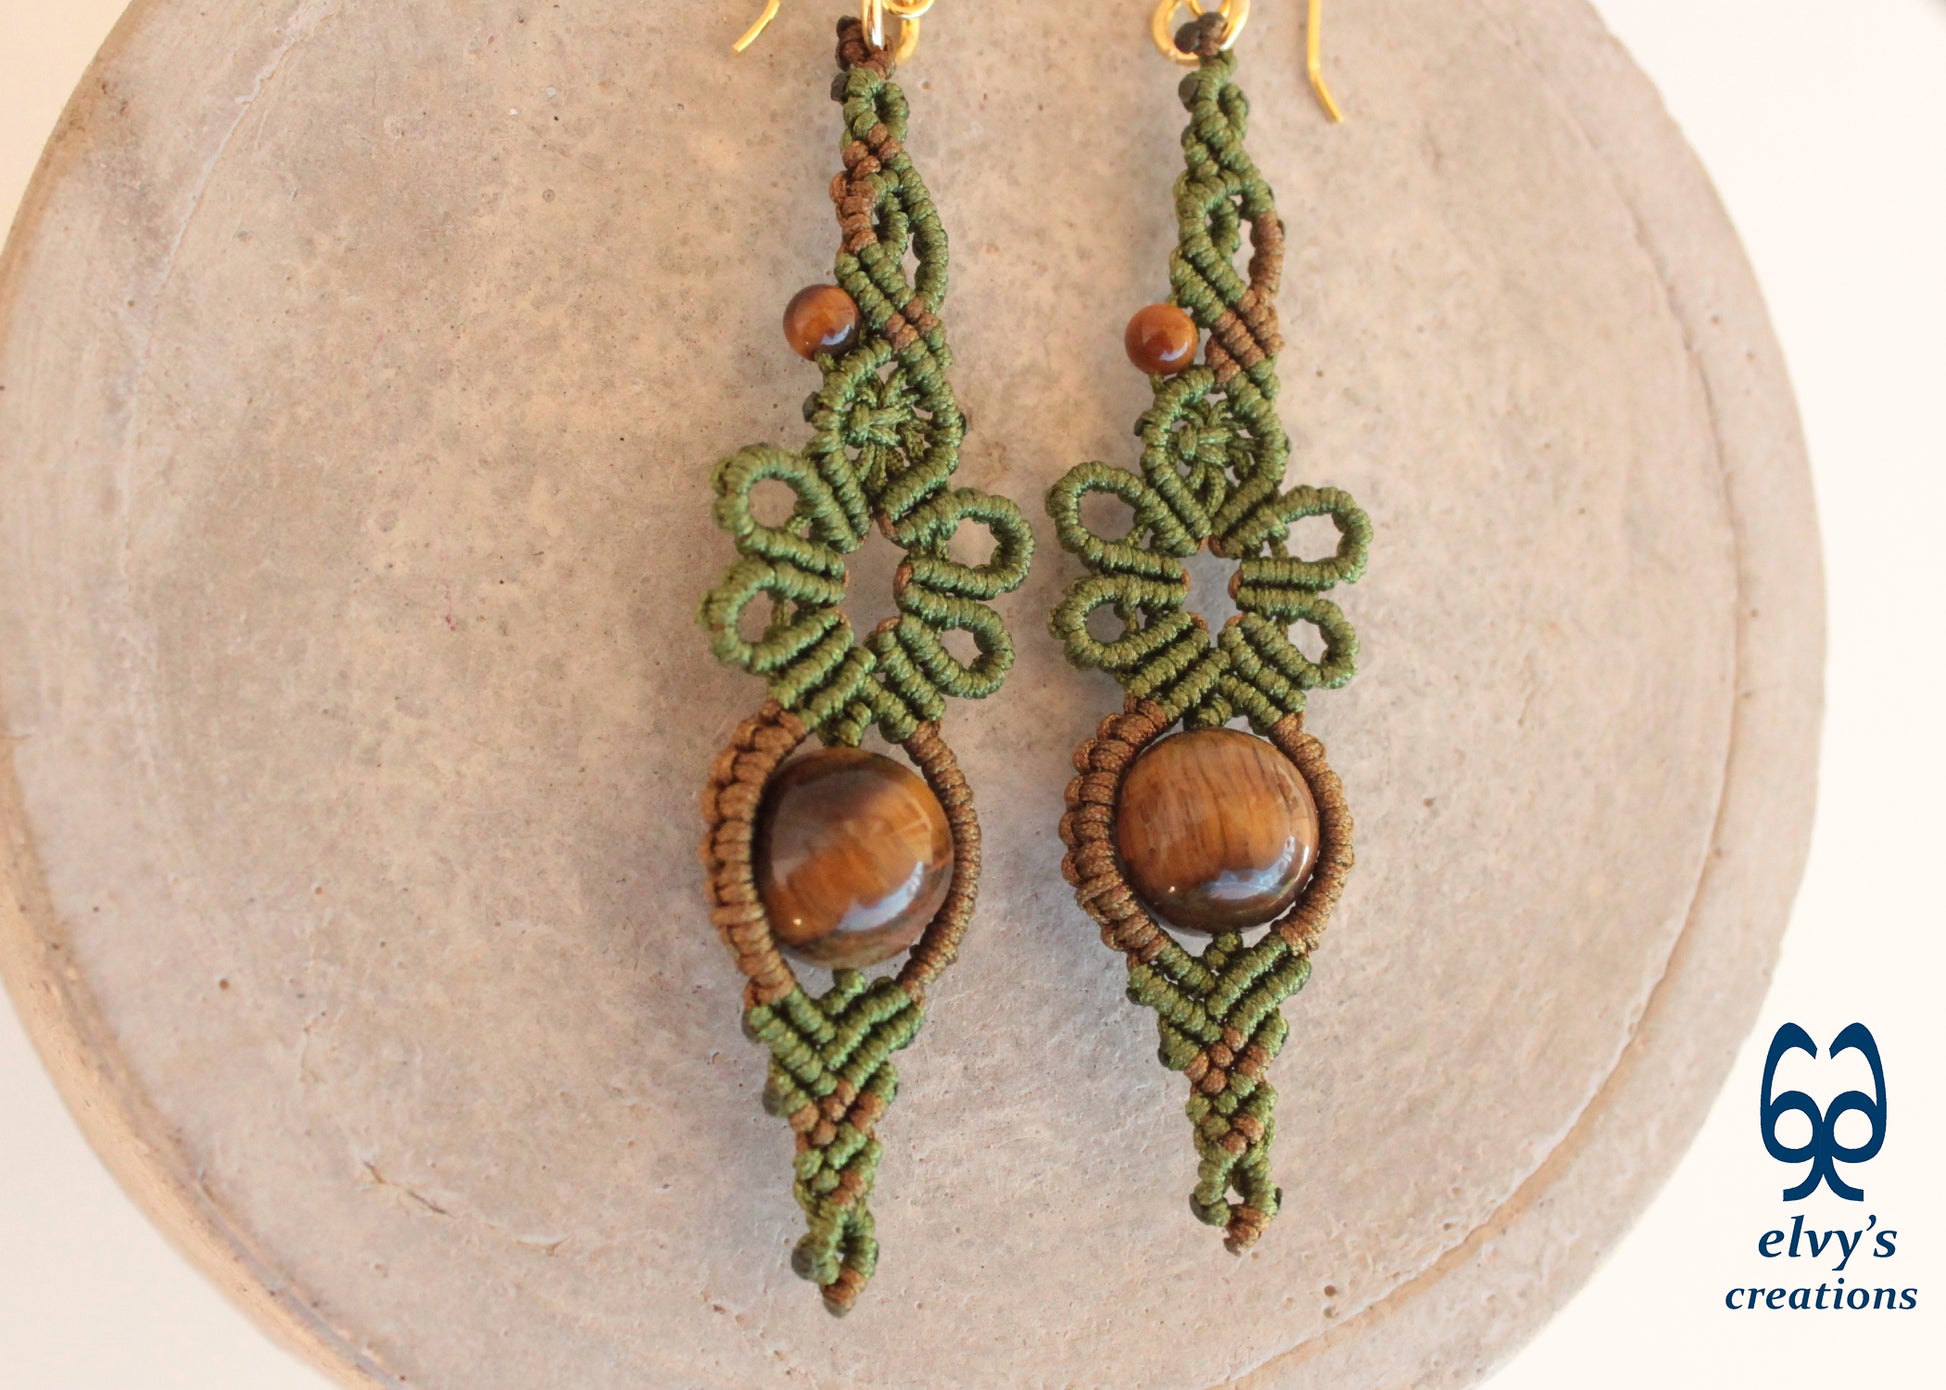 Green Macrame Earrings Gold Tiger Eye Gemstones Flower Dangle Lace Earrings Gift For Women